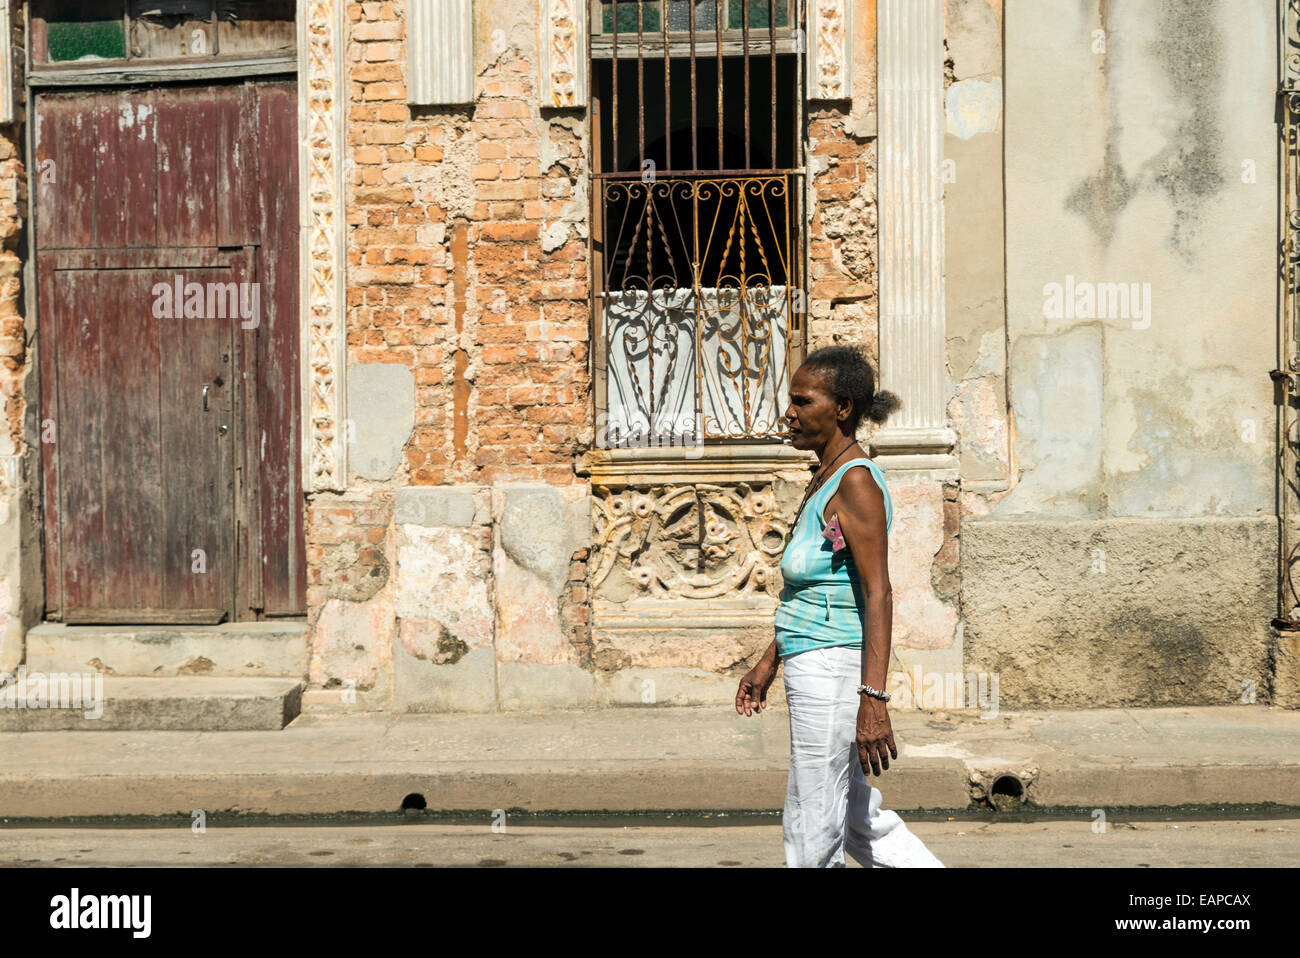 MATANZAS, Kuba - 10. Mai 2014: Gemischte Seniorin geht durch eine beschädigte Innenstadt Straße in der Stadt Matanzas, Kuba Stockfoto